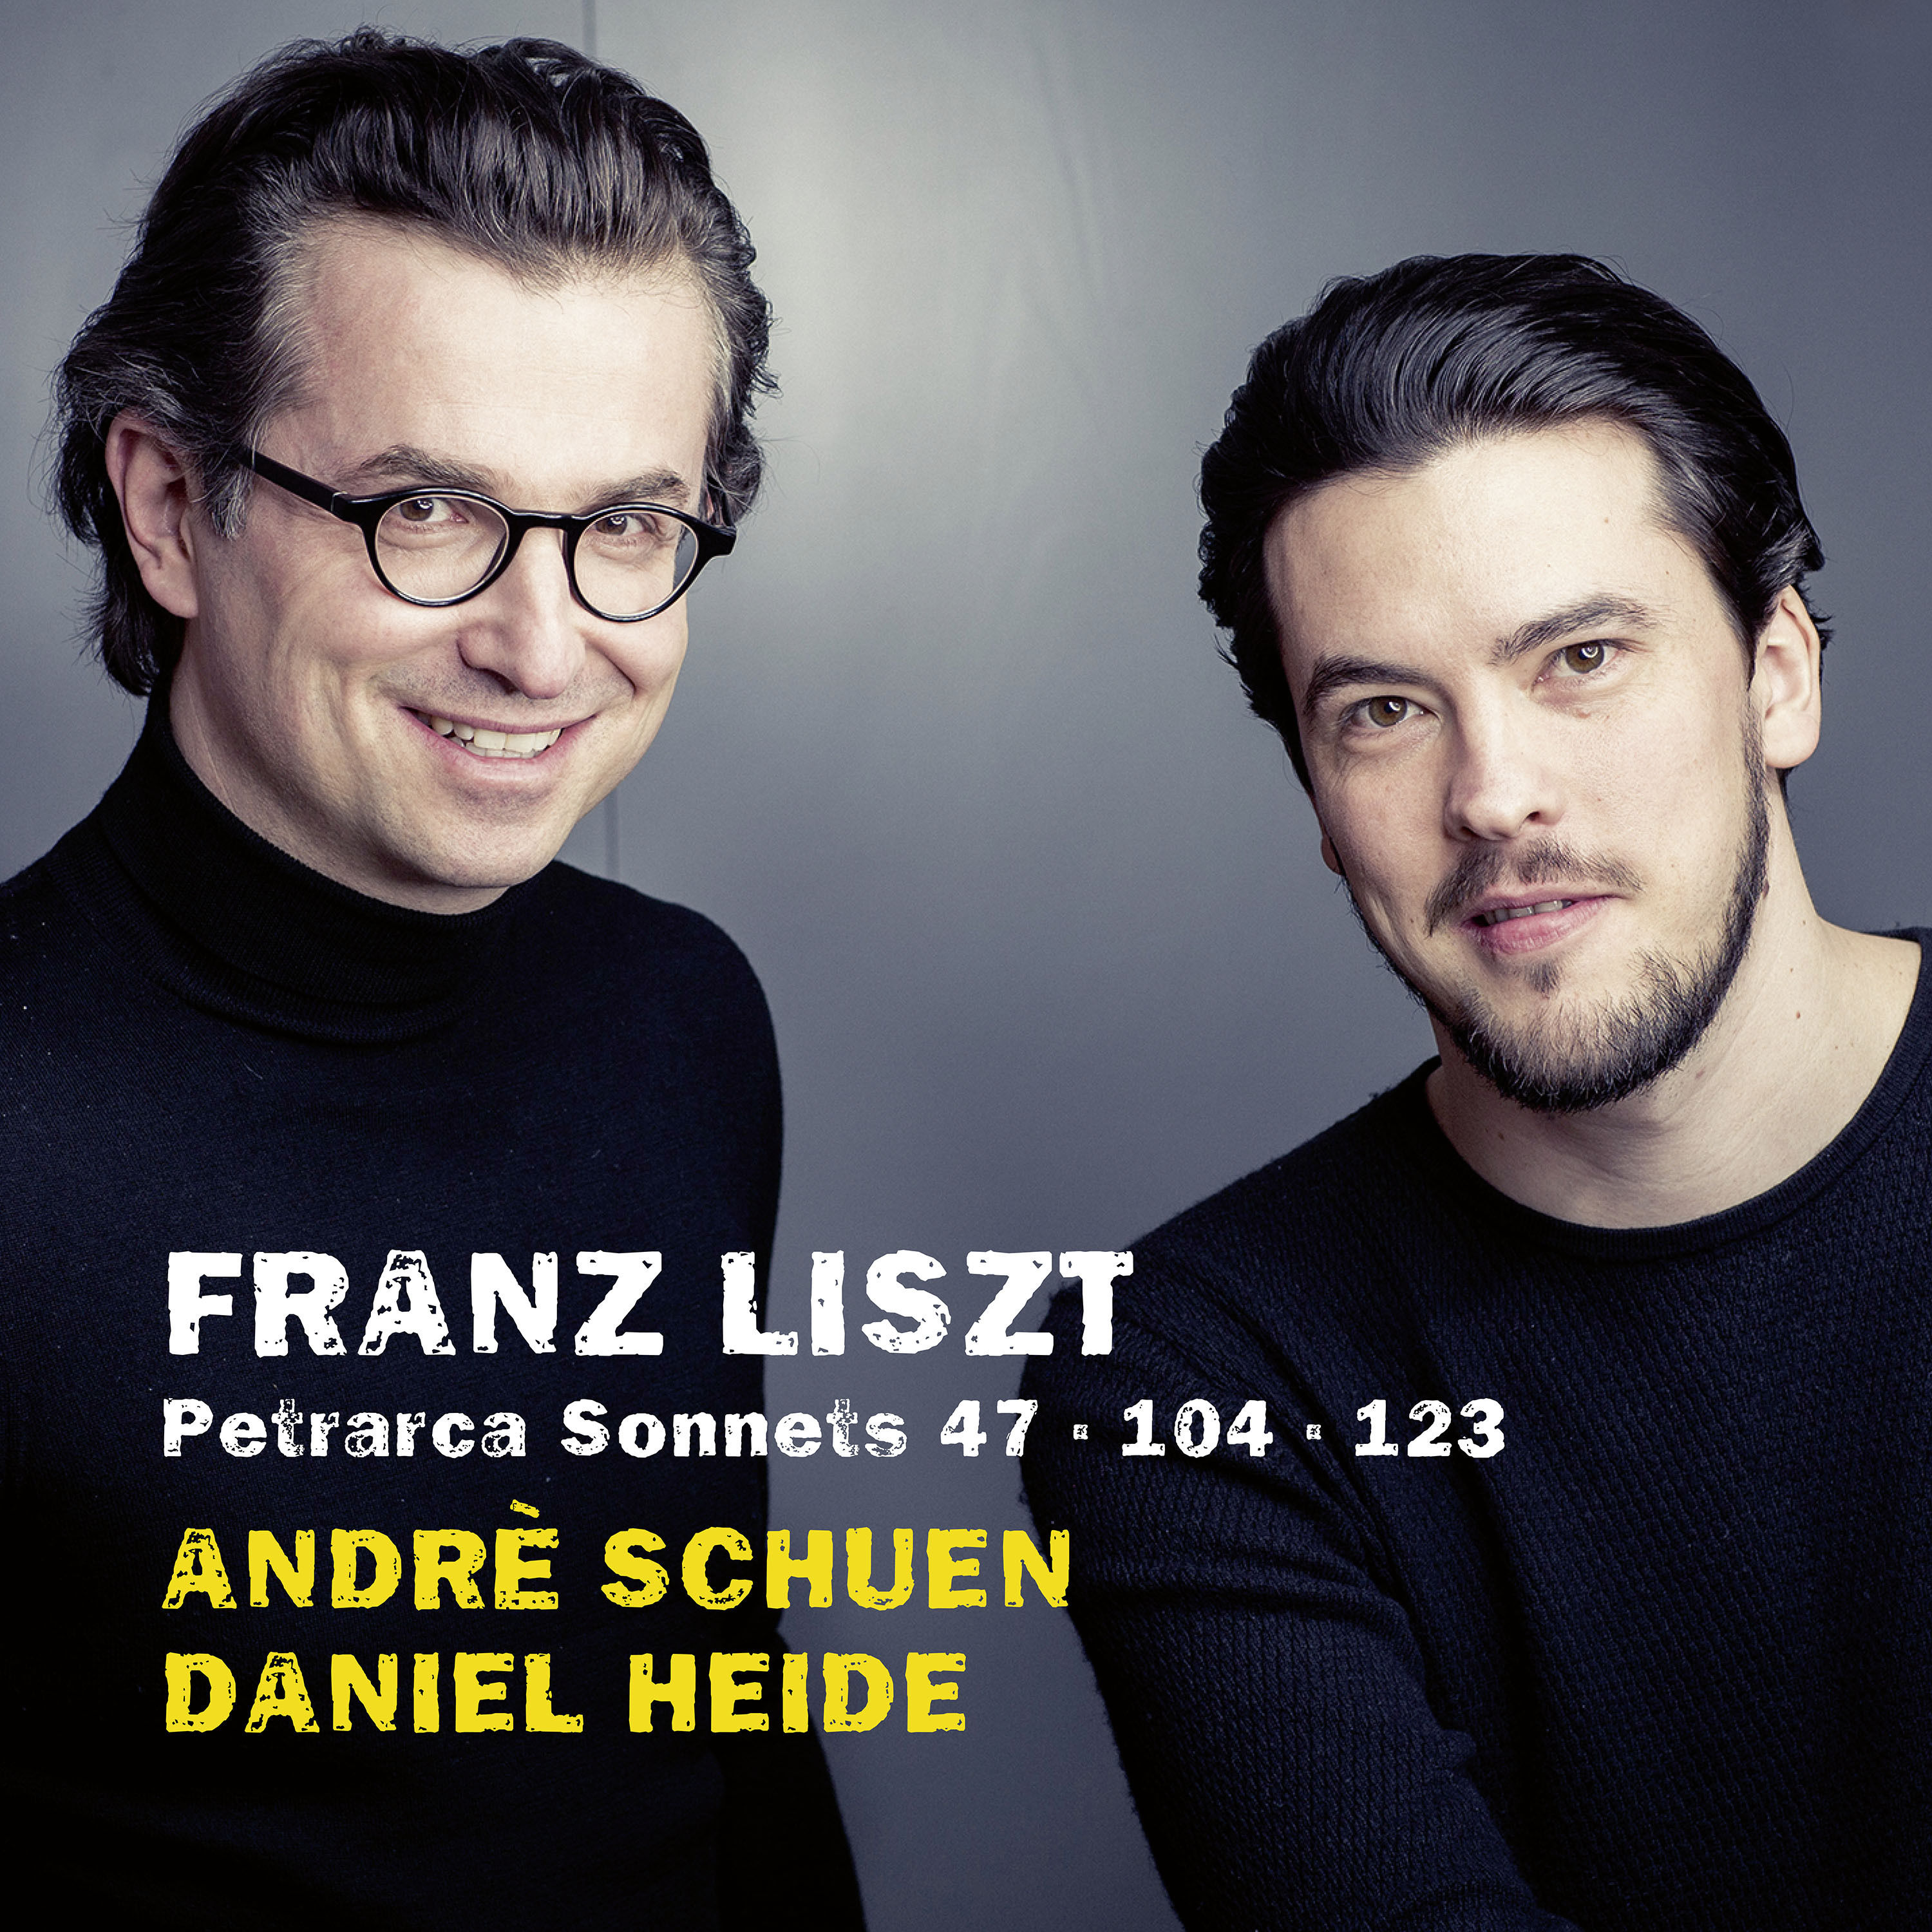 Andre Schuen and Daniel Heide – Liszt: Petrarca Sonnets (2019) [FLAC 24bit/96kHz]